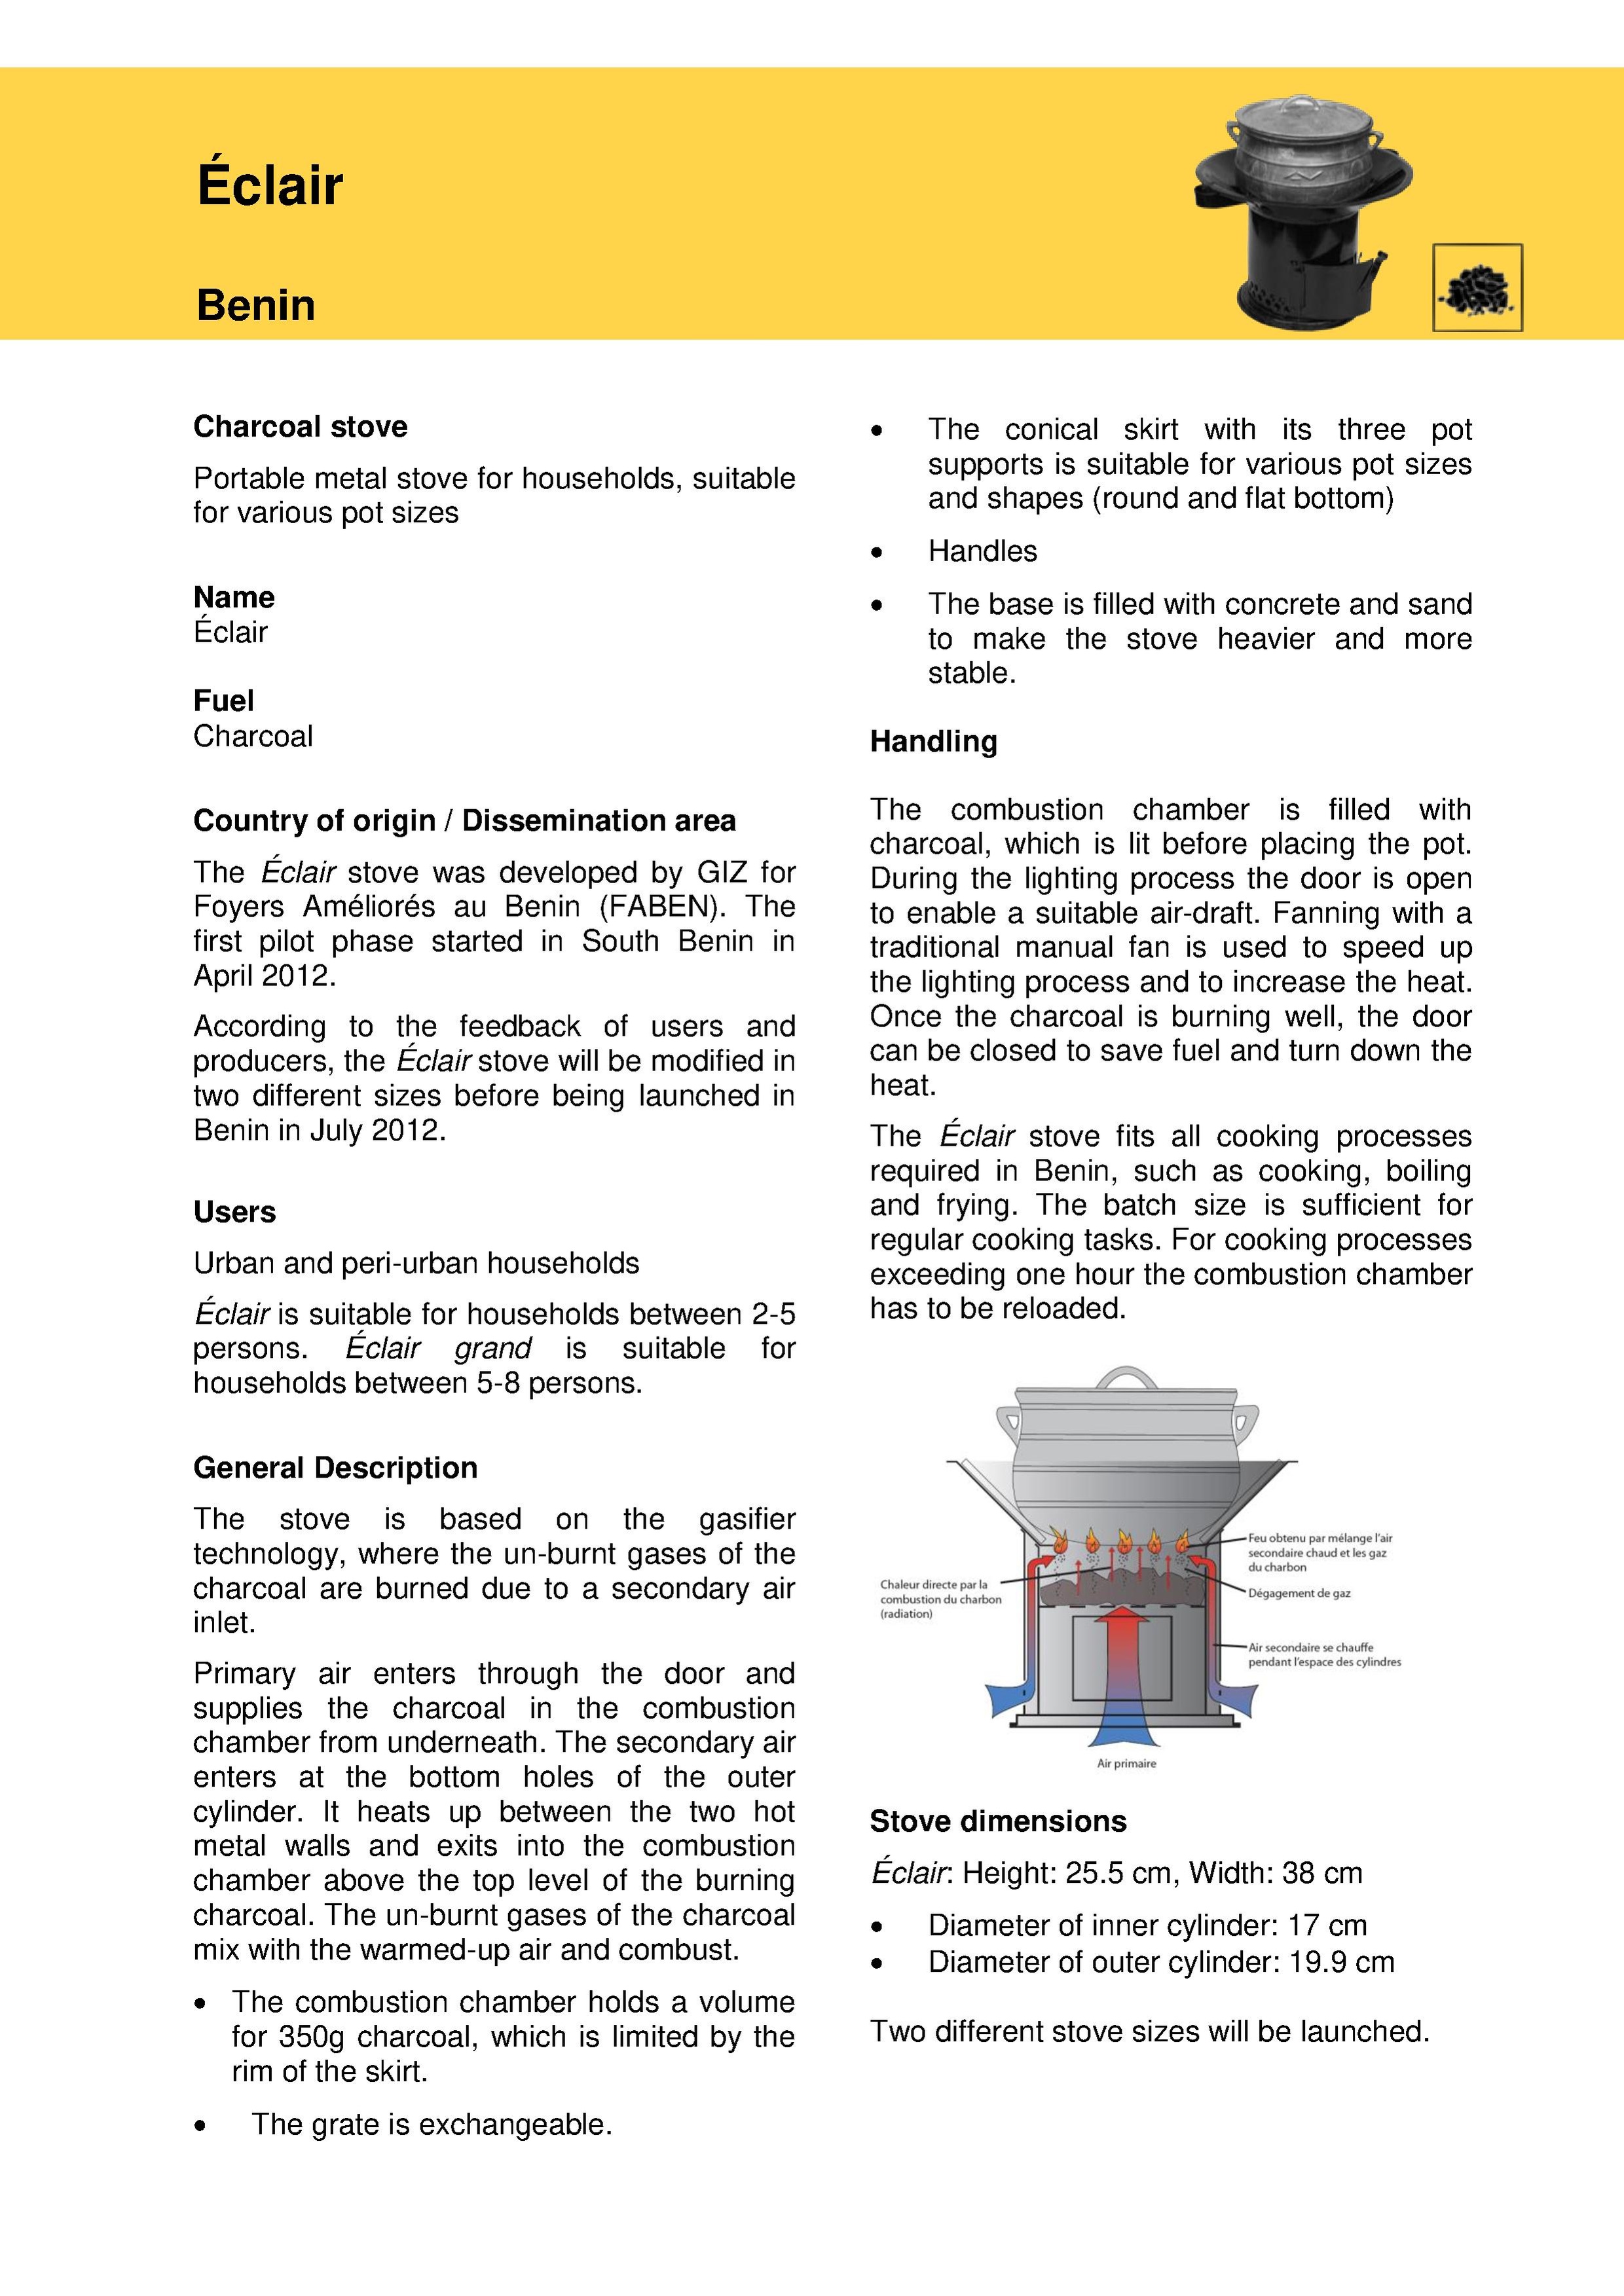 ECLAIR Benin stove-factsheet eng.pdf